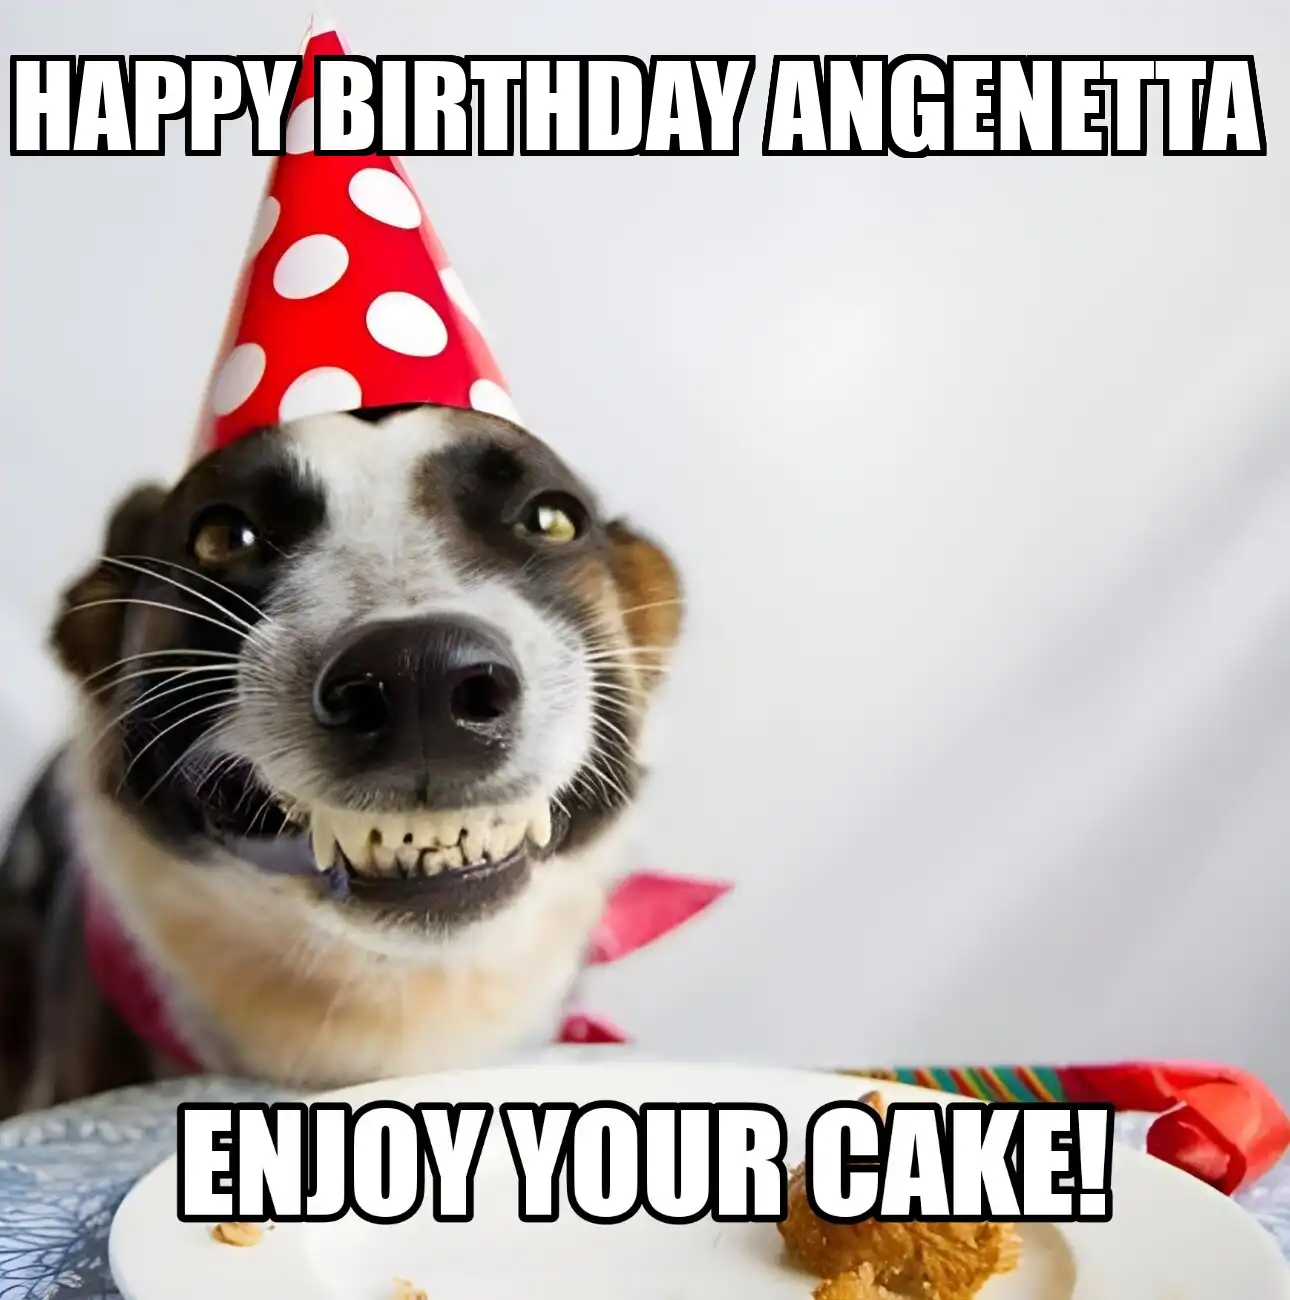 Happy Birthday Angenetta Enjoy Your Cake Dog Meme